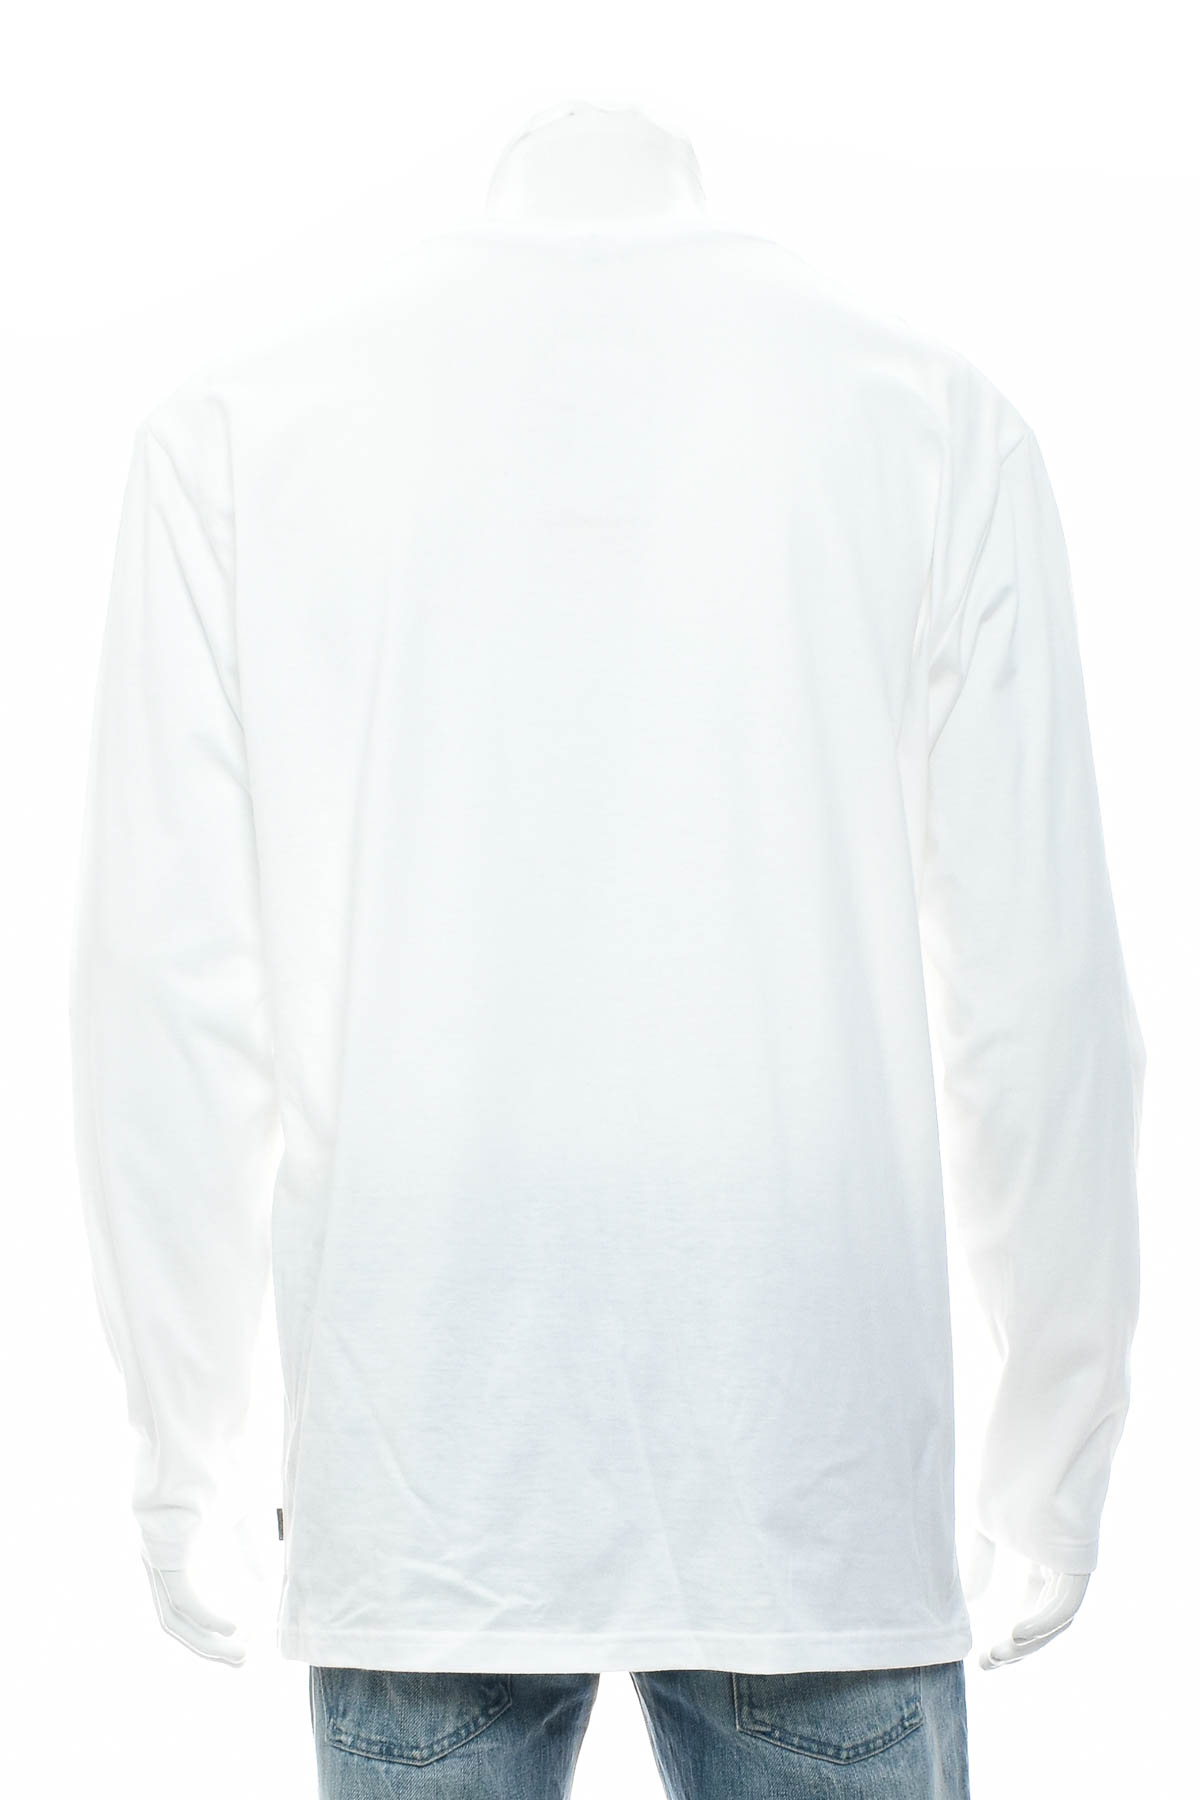 Ανδρική μπλούζα - Trigema - 1